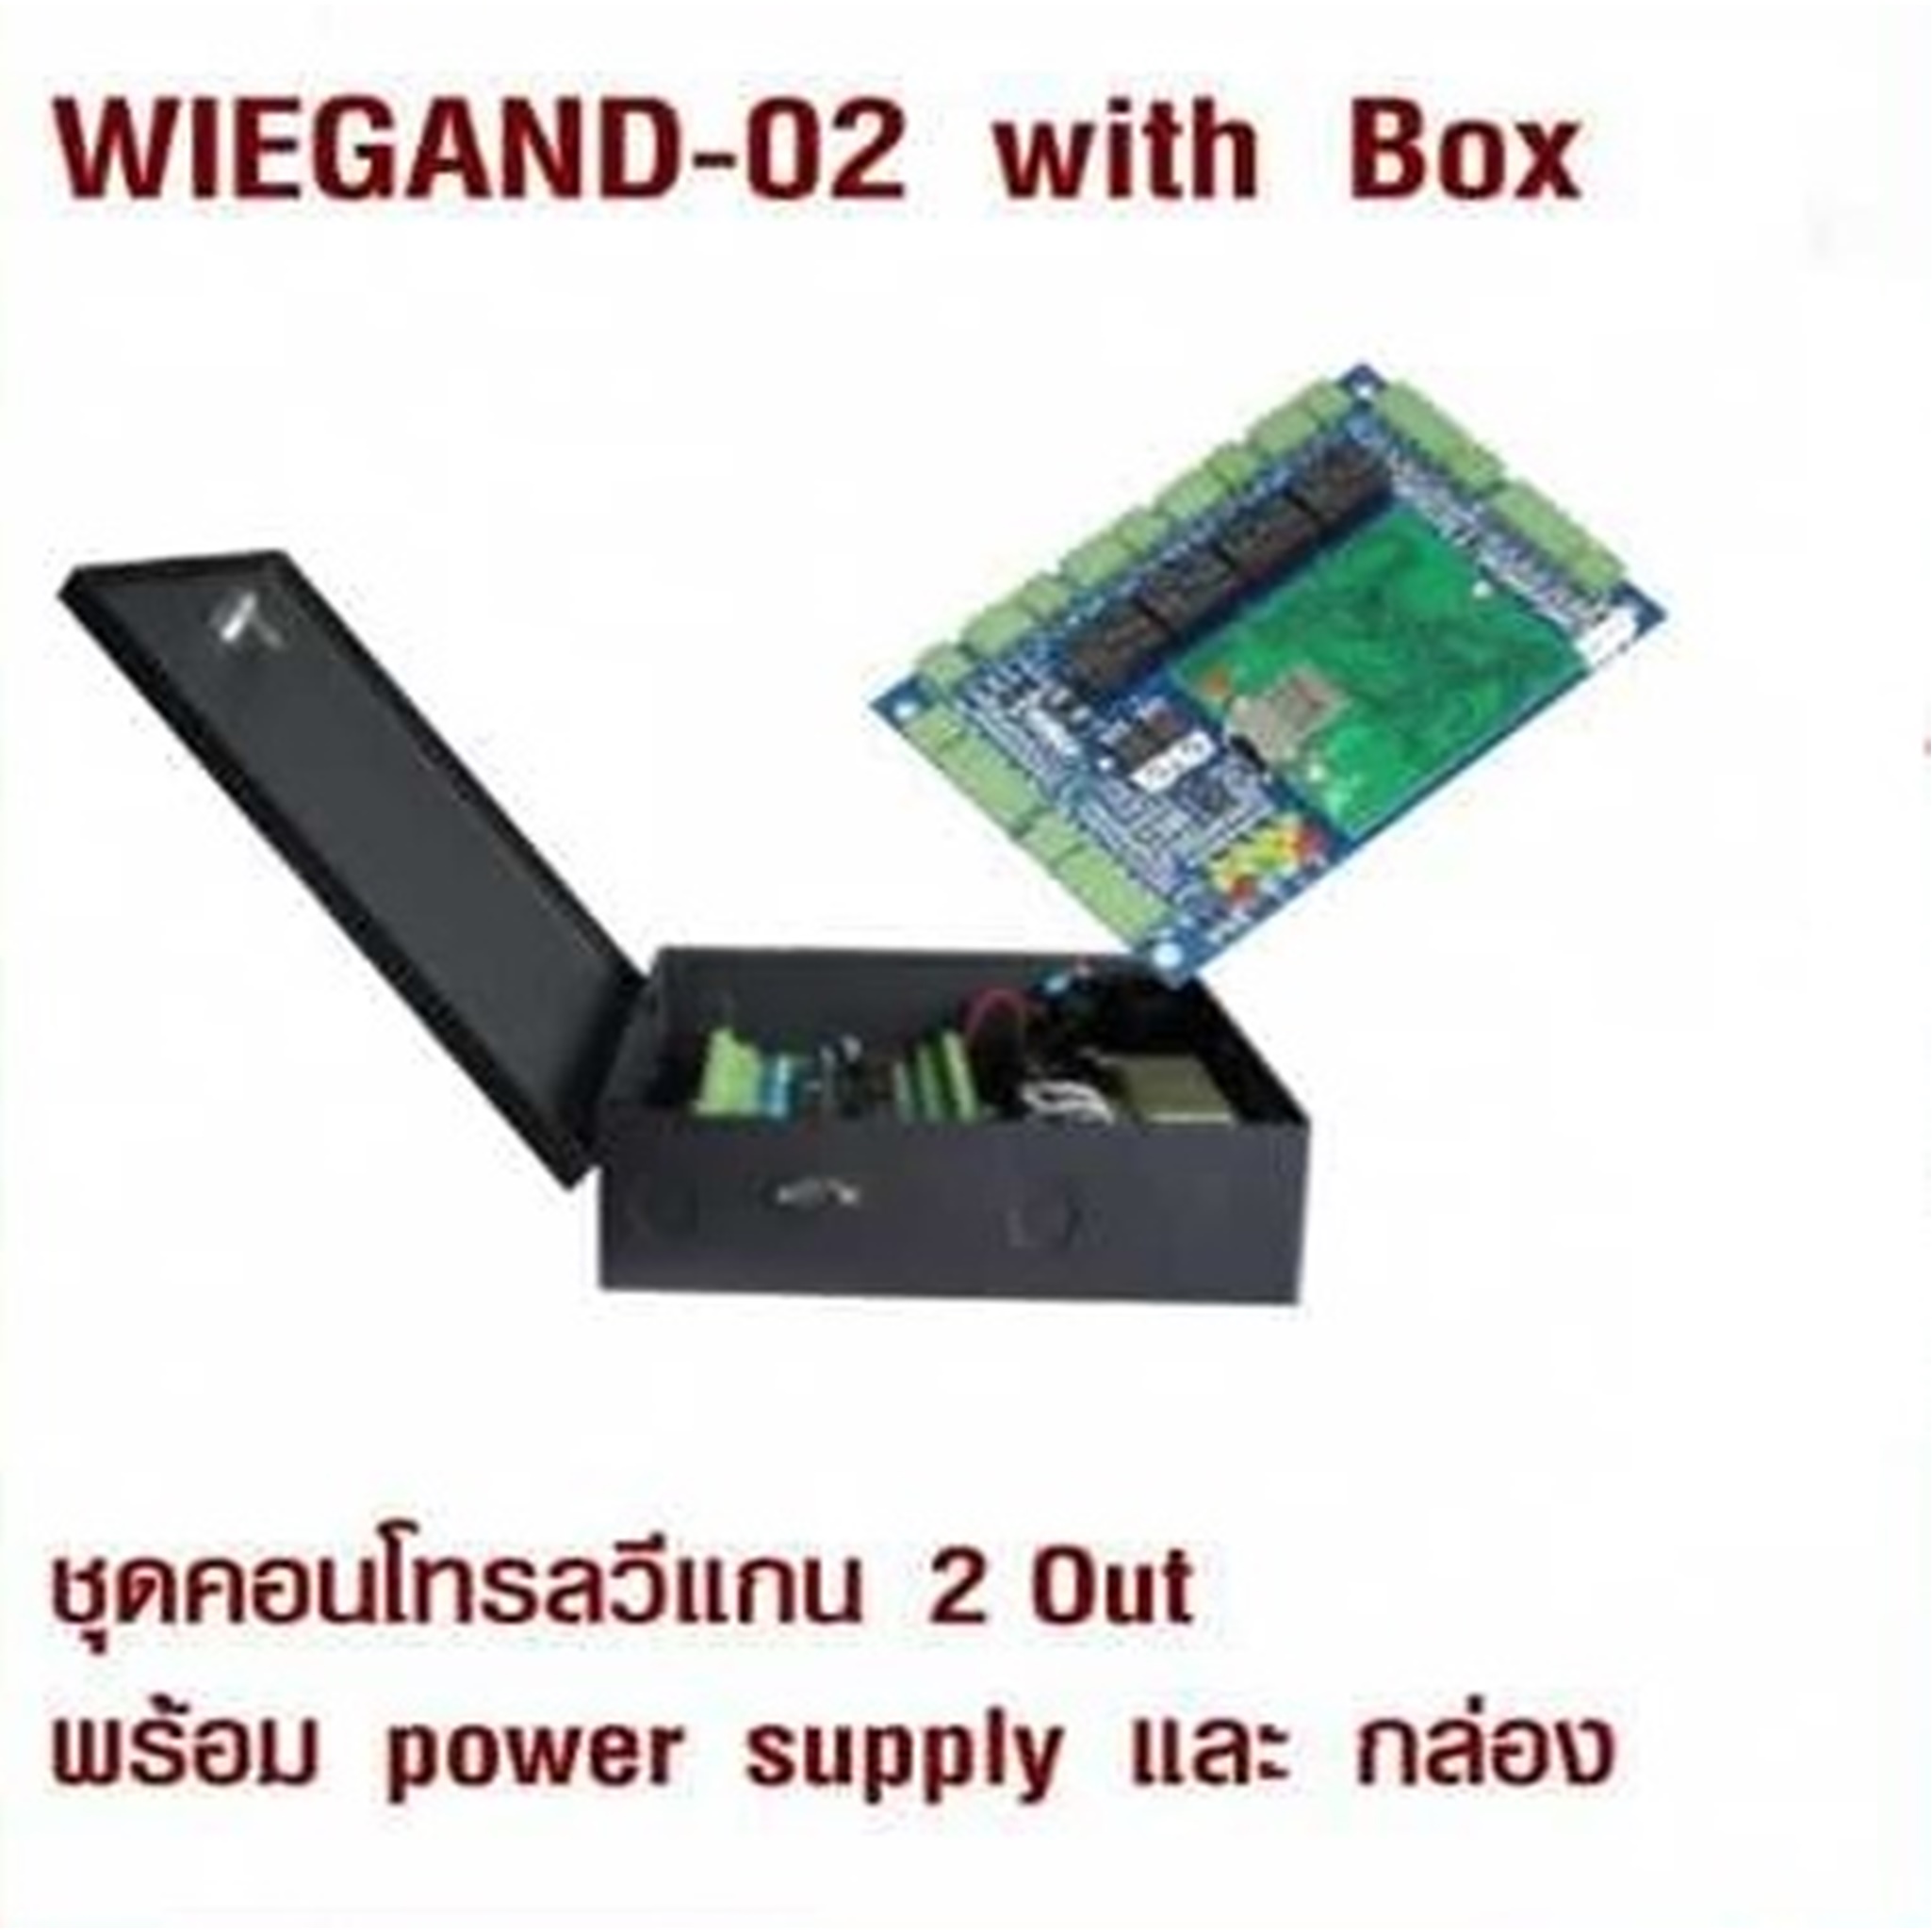 WIEGAND-02 with Box ชุดคอนโทรลวีแกน 2 Out